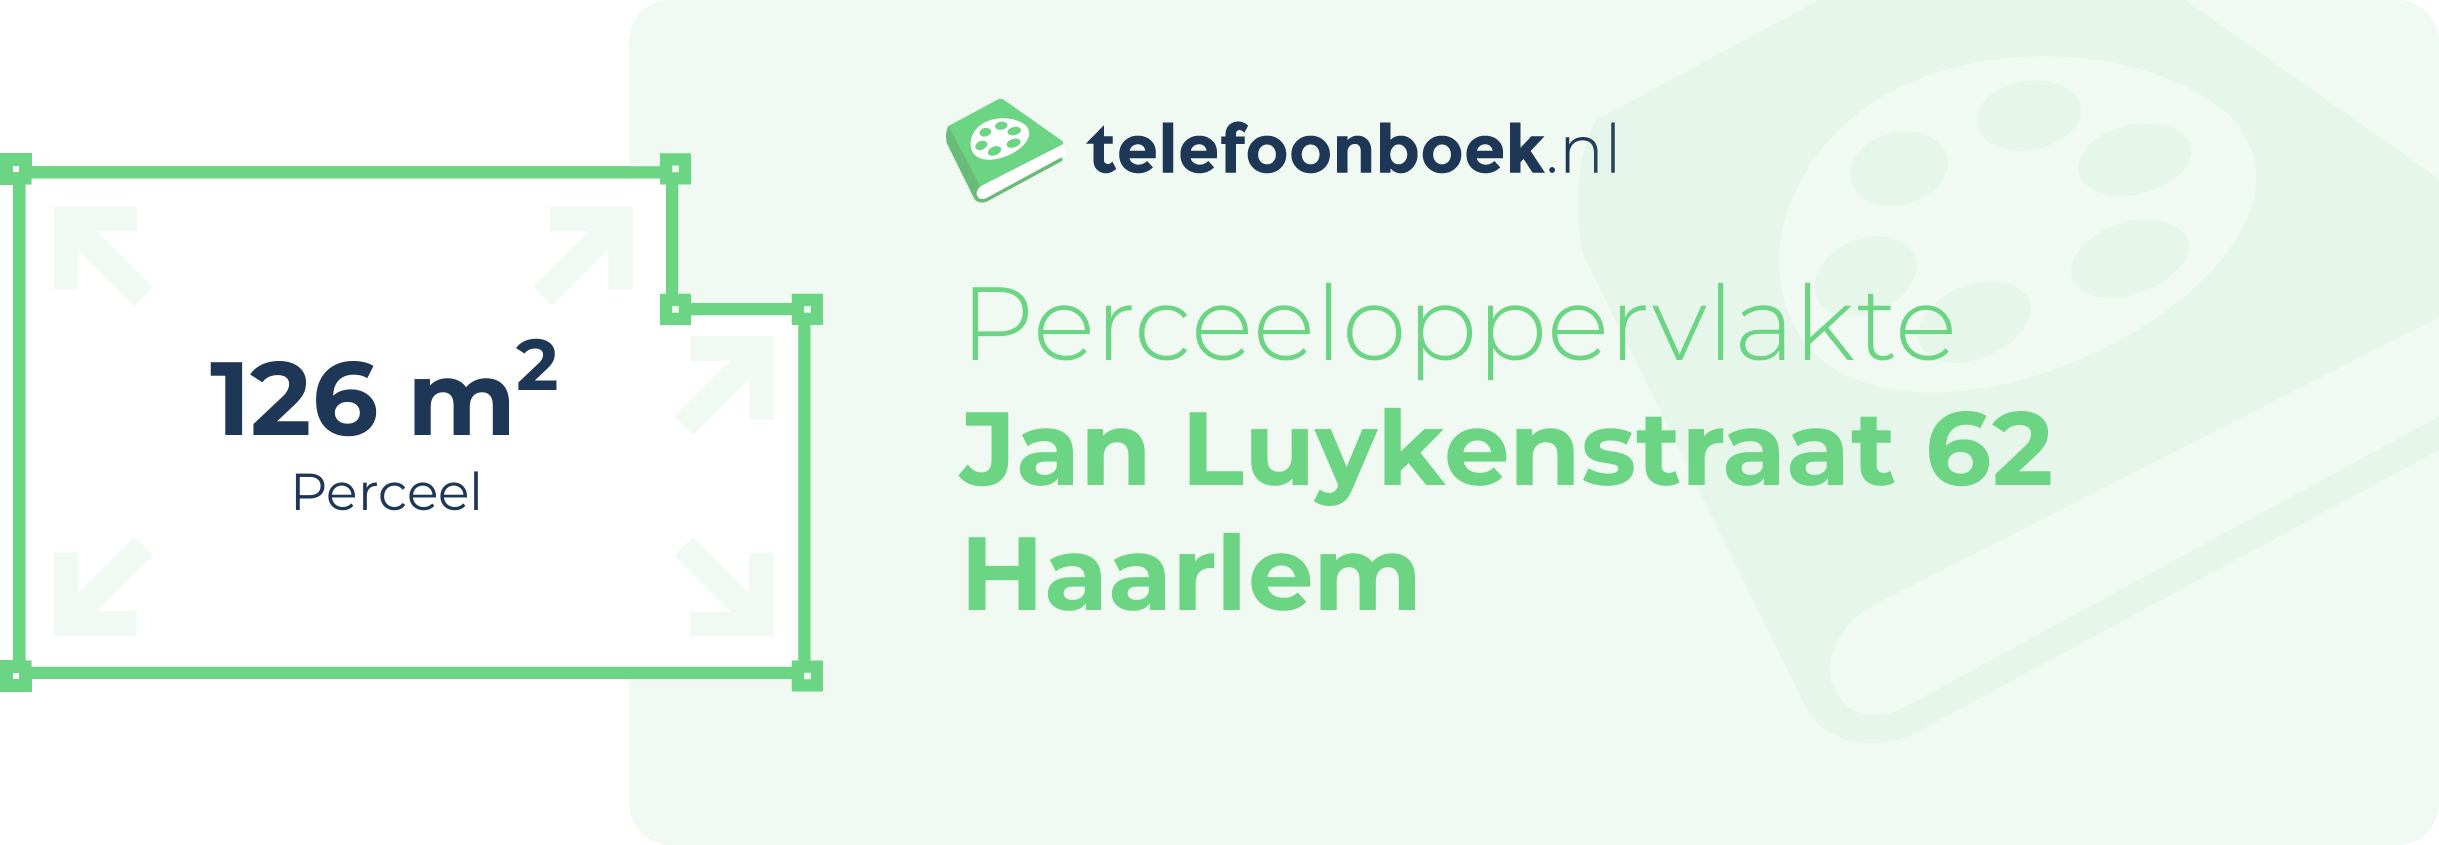 Perceeloppervlakte Jan Luykenstraat 62 Haarlem